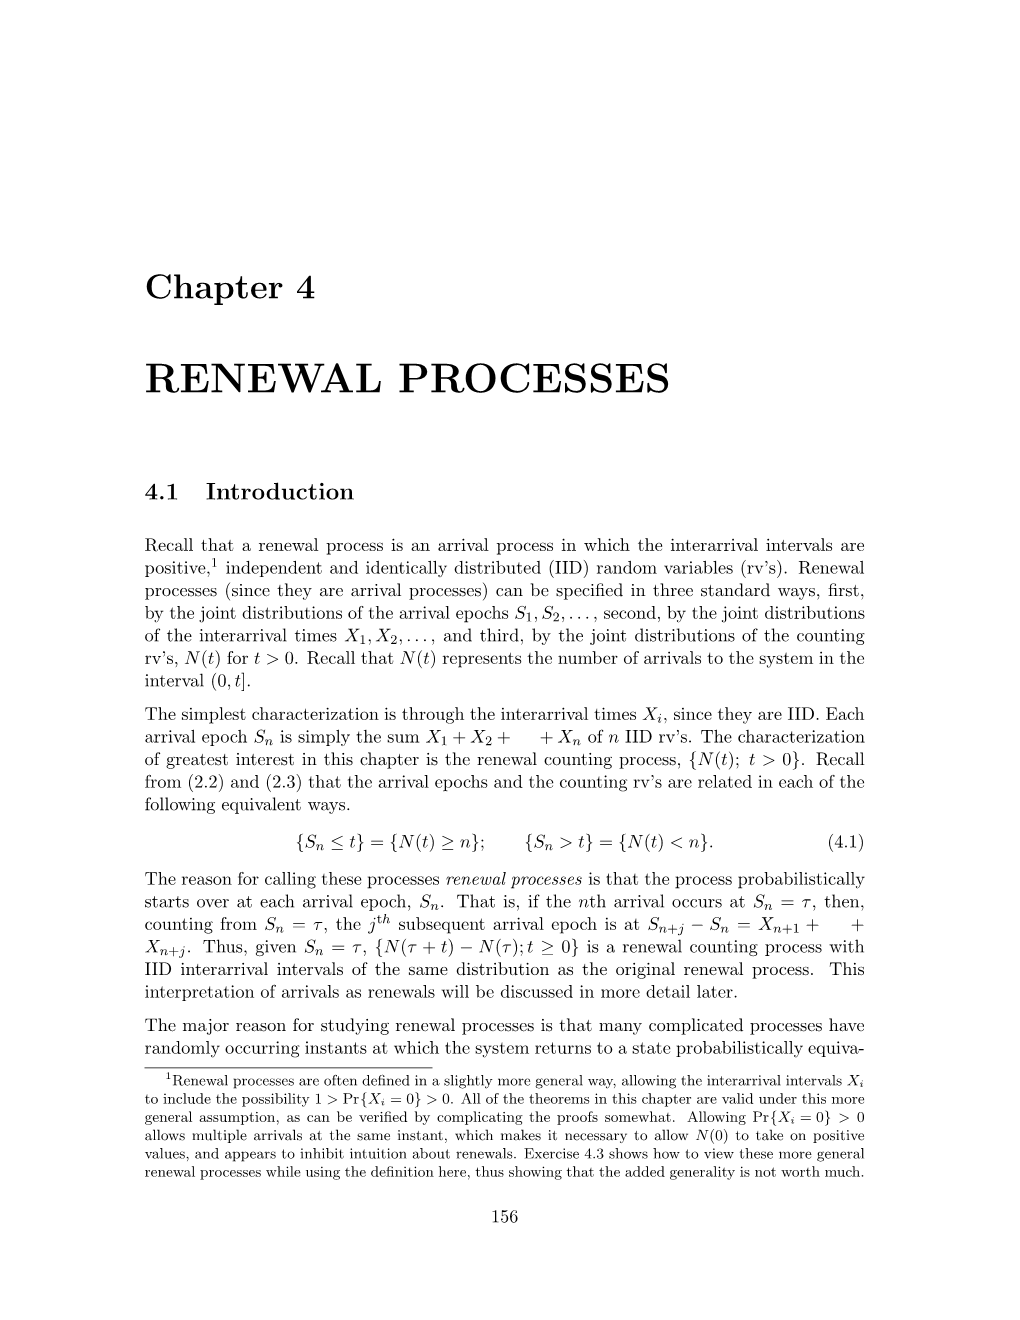 Renewal Processes